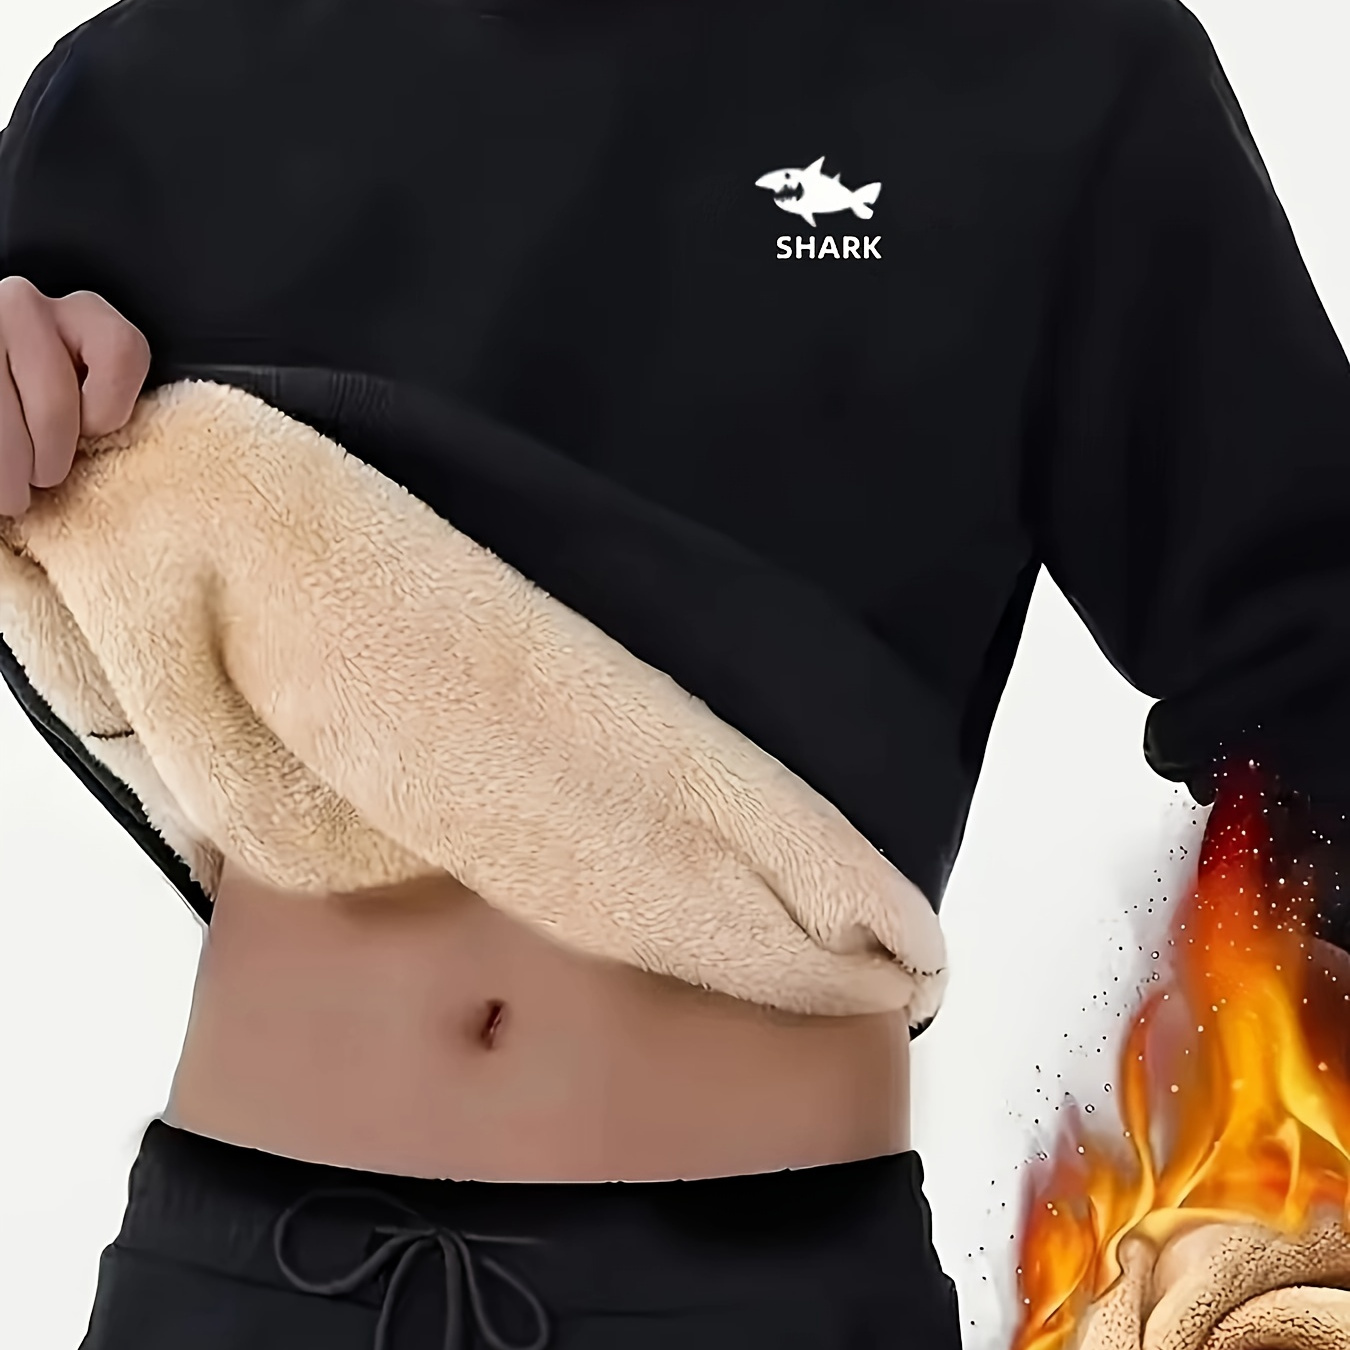 

Fleece Lined Trendy Sweatshirt, Men's Casual Graphic Design Crew Neck Sweatshirt For Men Fall Winter